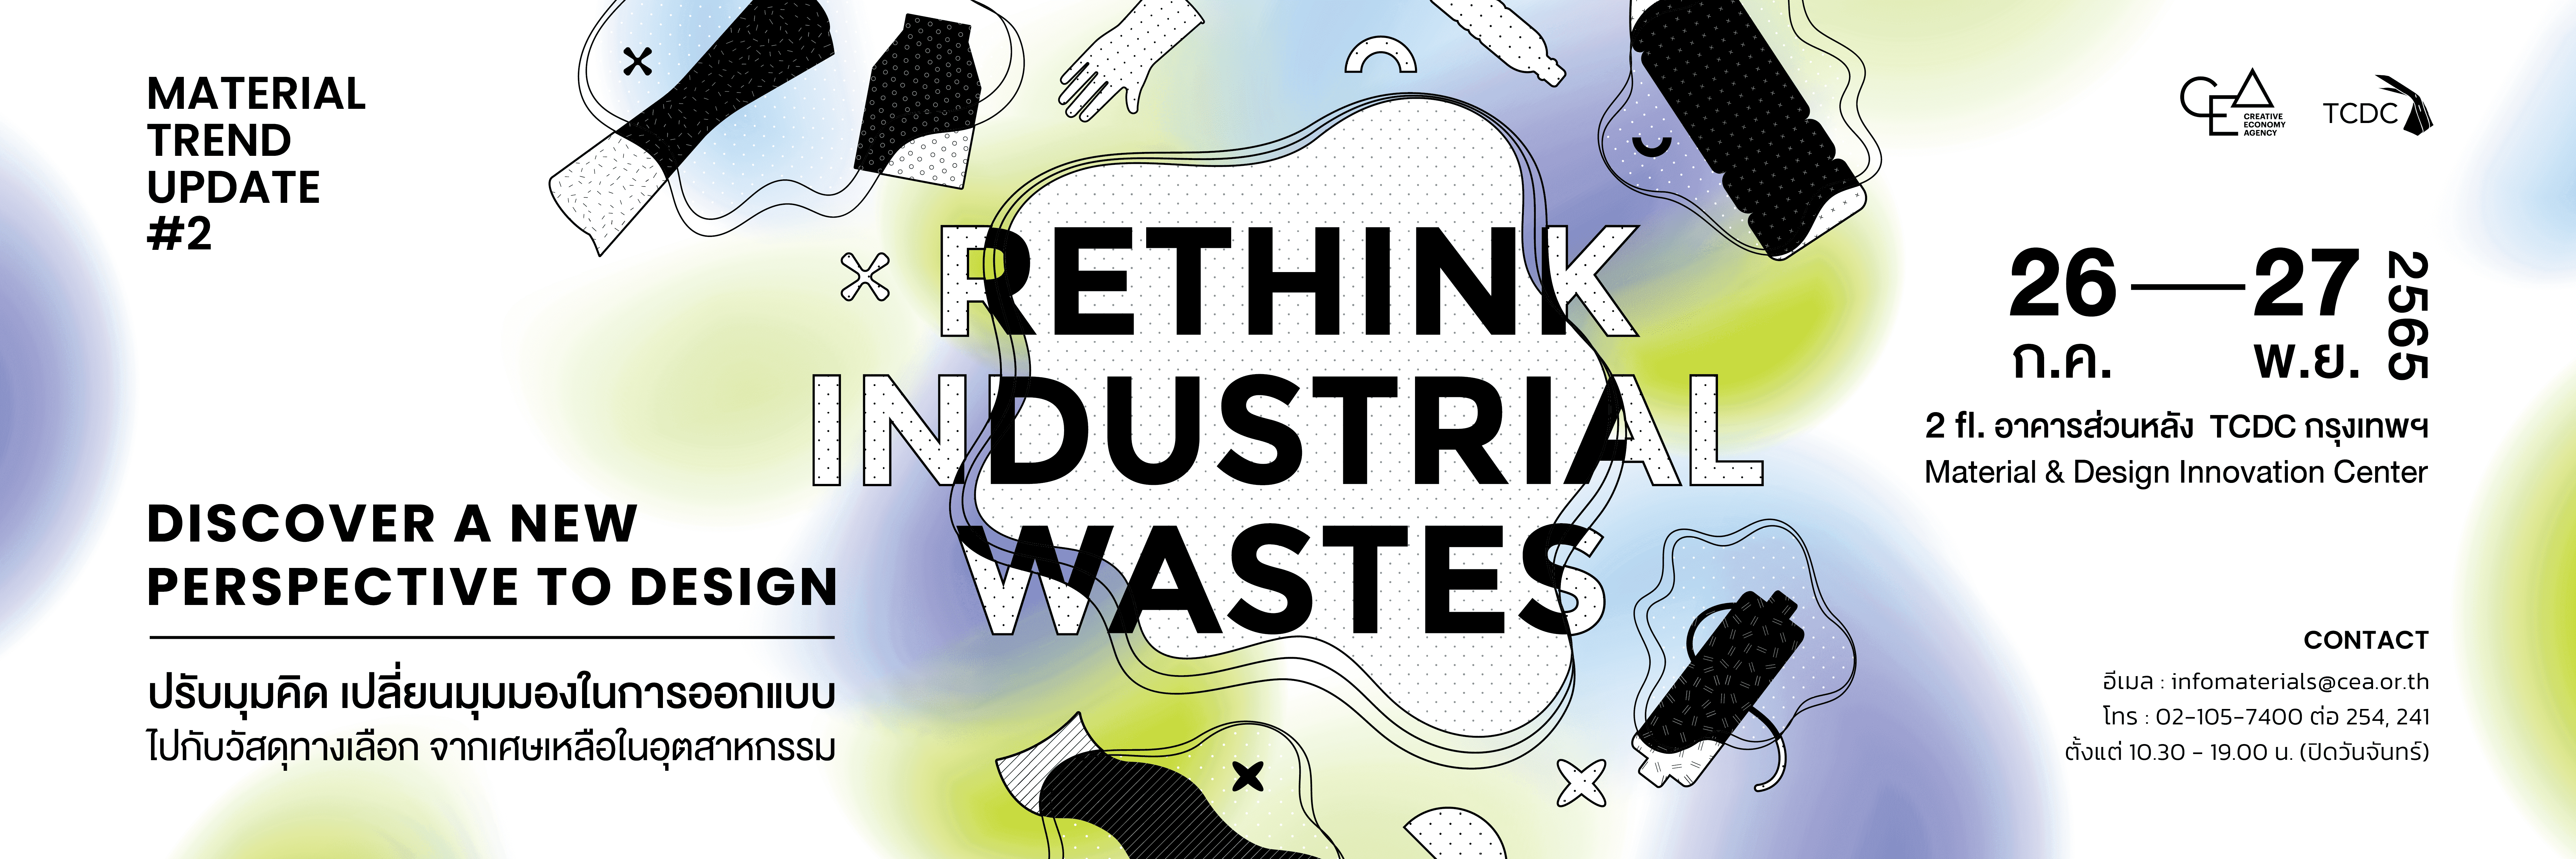 การจัดแสดงแผ่นตัวอย่างวัสดุ  Rethink Industrial wastes